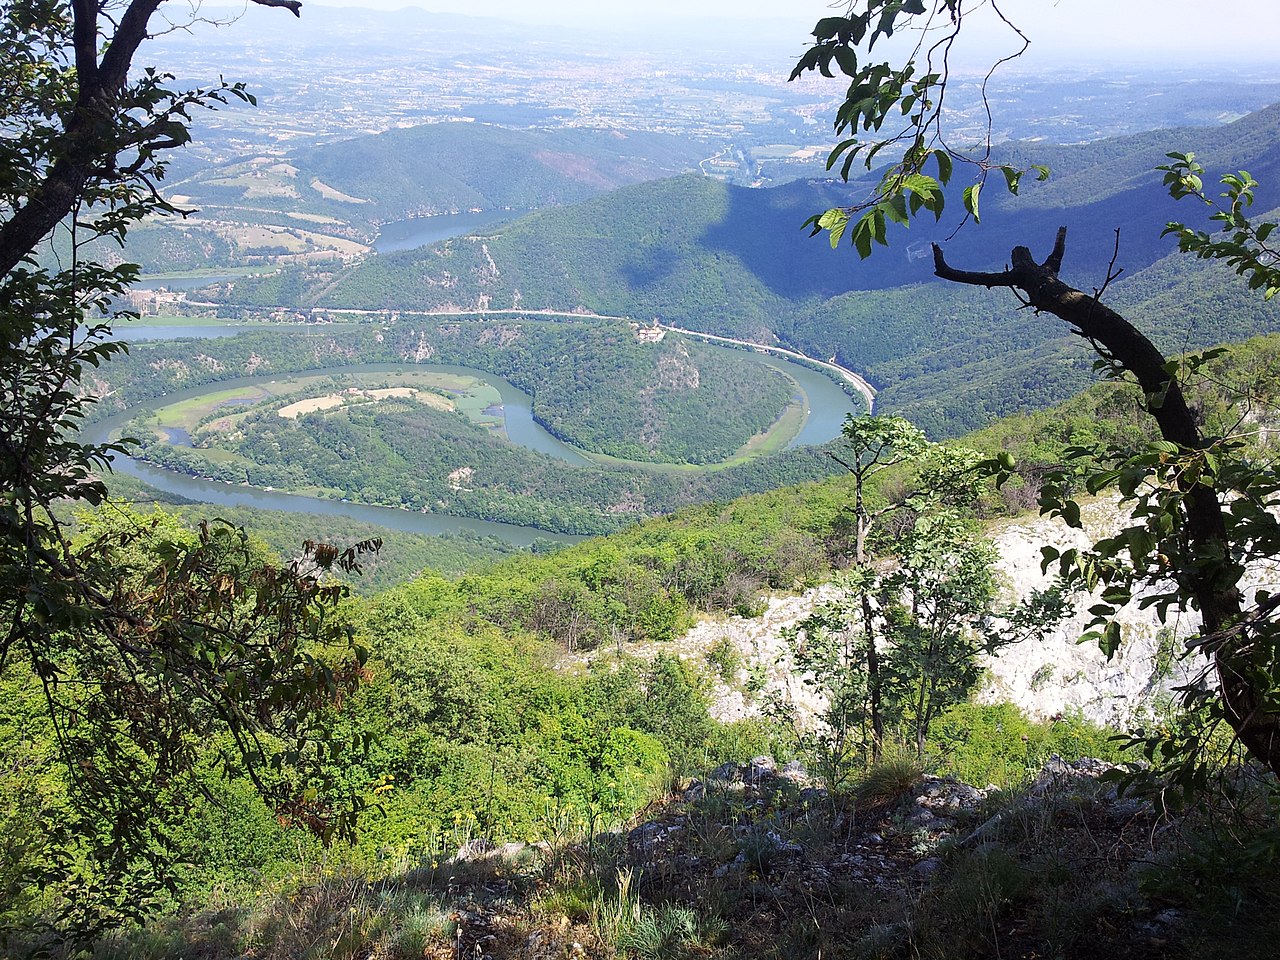 Blago Zapadne Srbije: Srpska Sveta gora usred najlepše klisure u zemlji (FOTO) 12